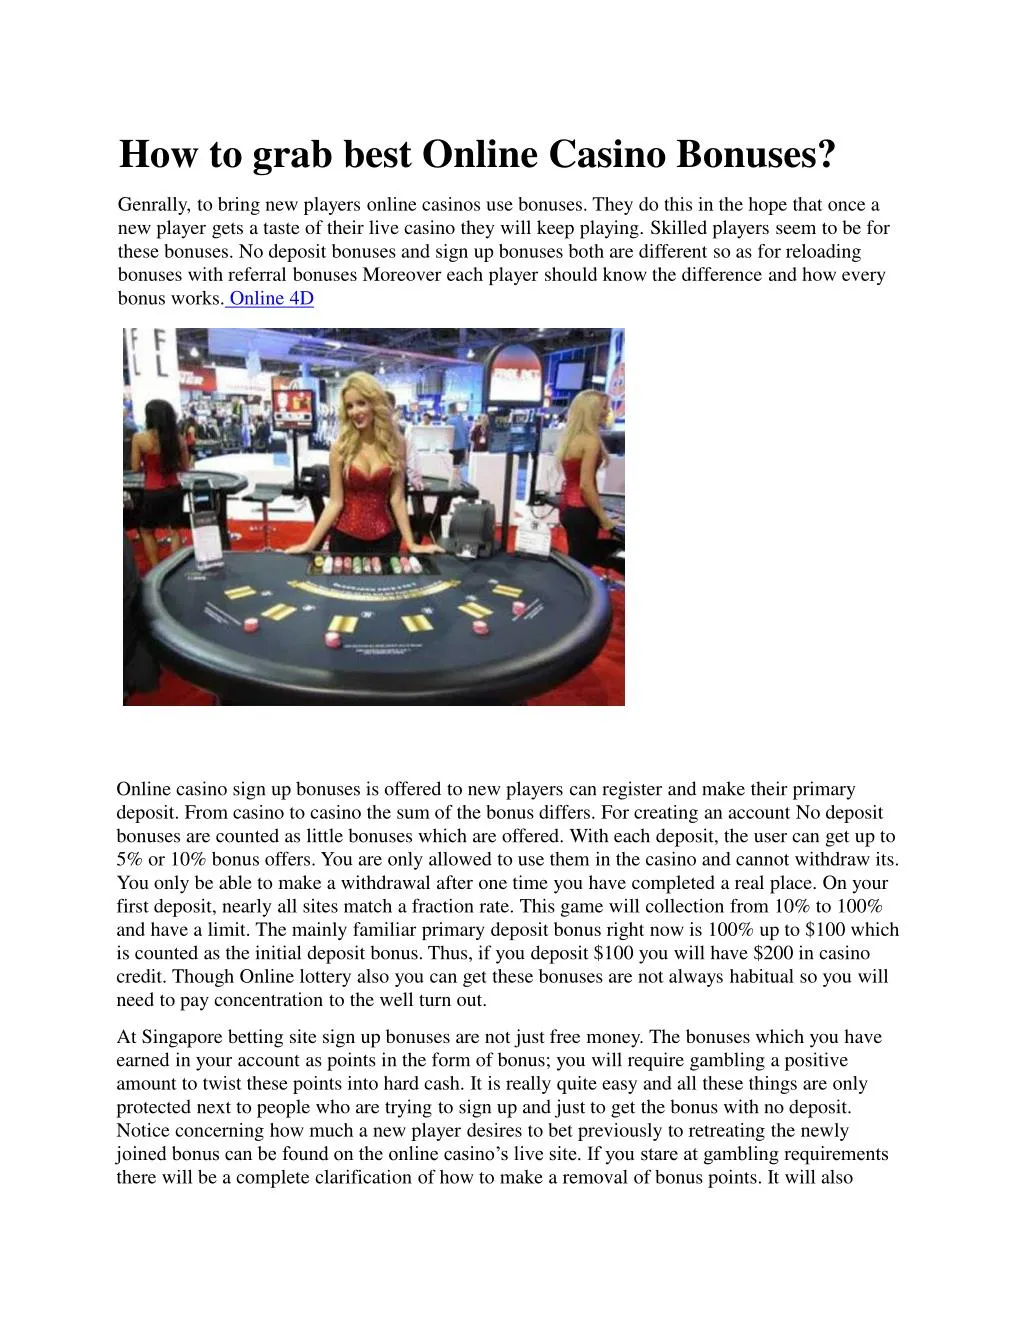 how to grab best online casino bonuses n.